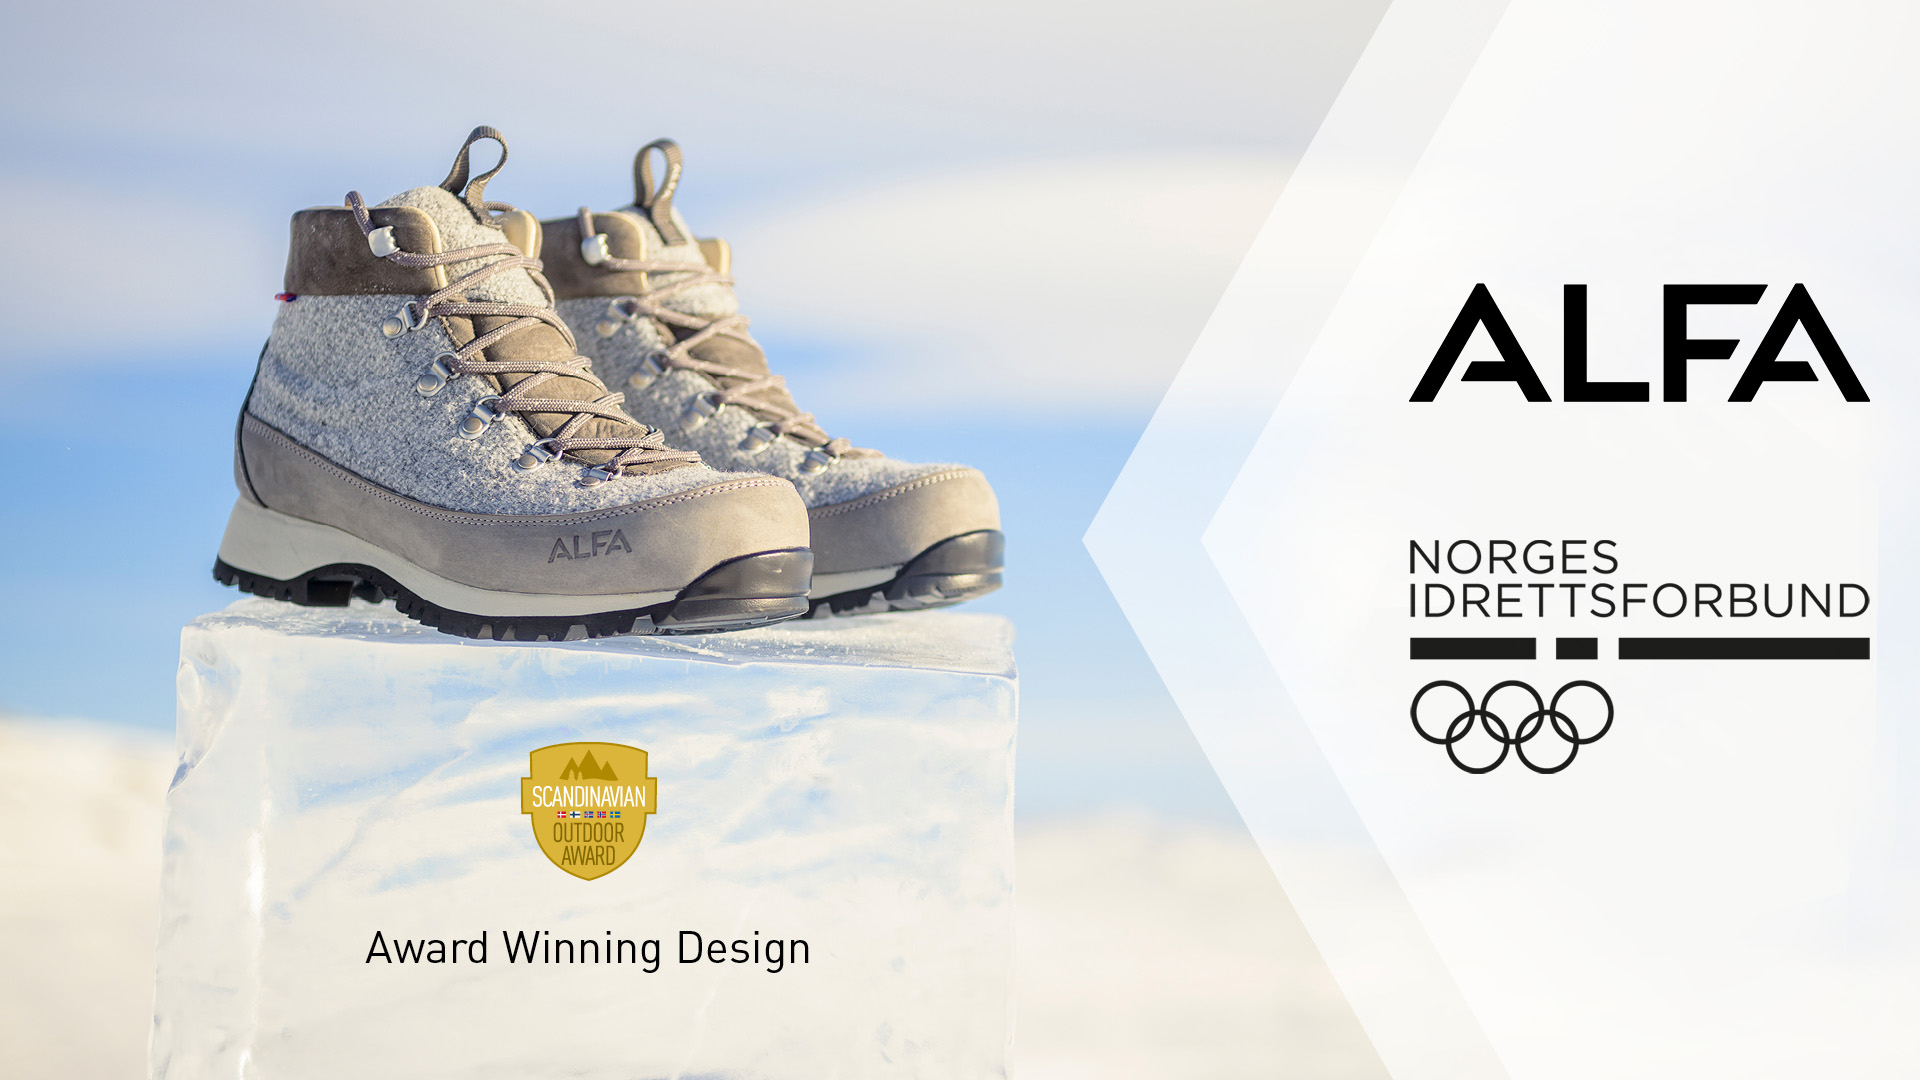 Alfa sko og Norges idrettsforbund har inngått samarbeid.